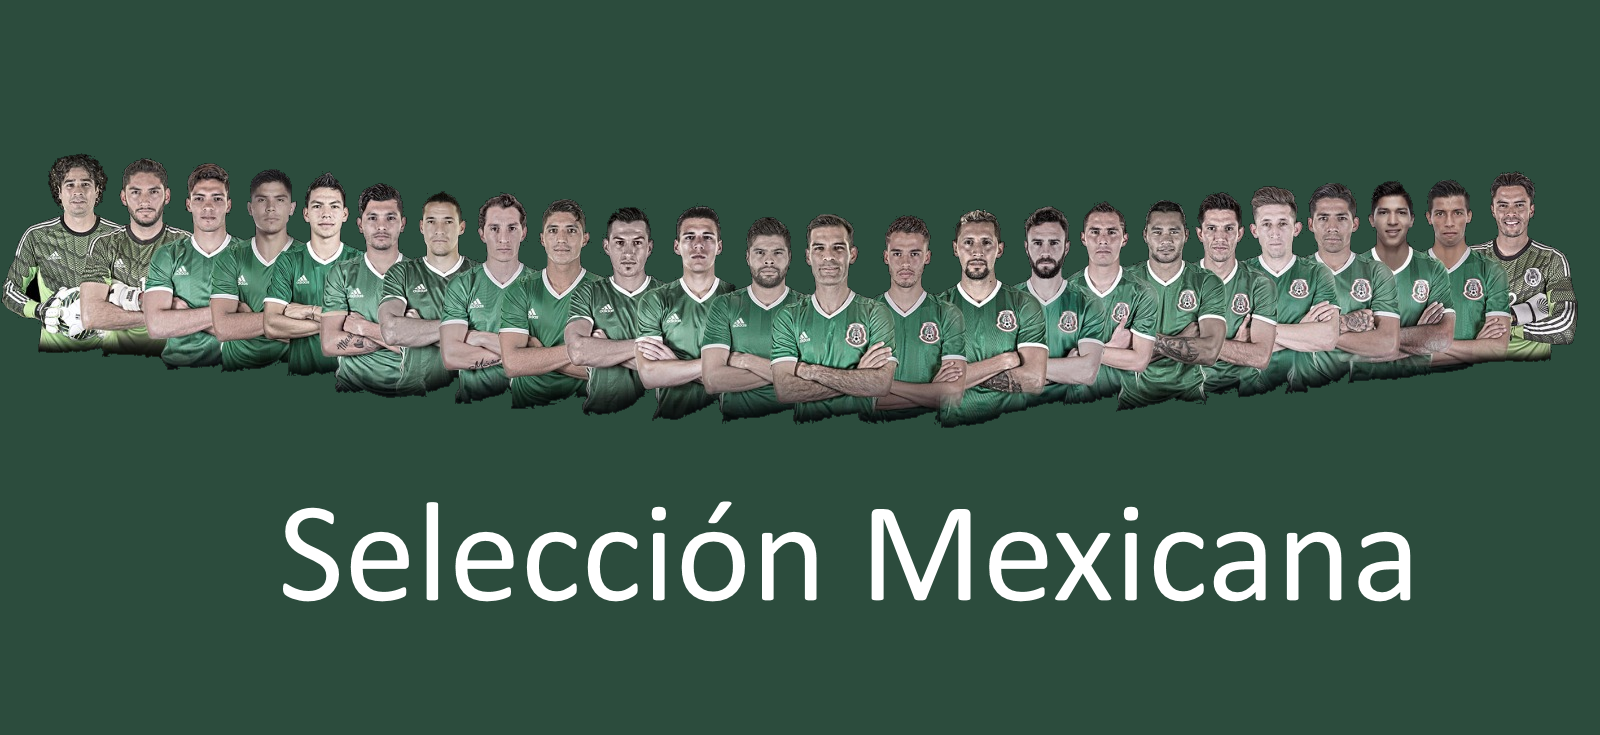 Convocatoria Seleccion Mexicana eliminatorias El Salvador y Honduras